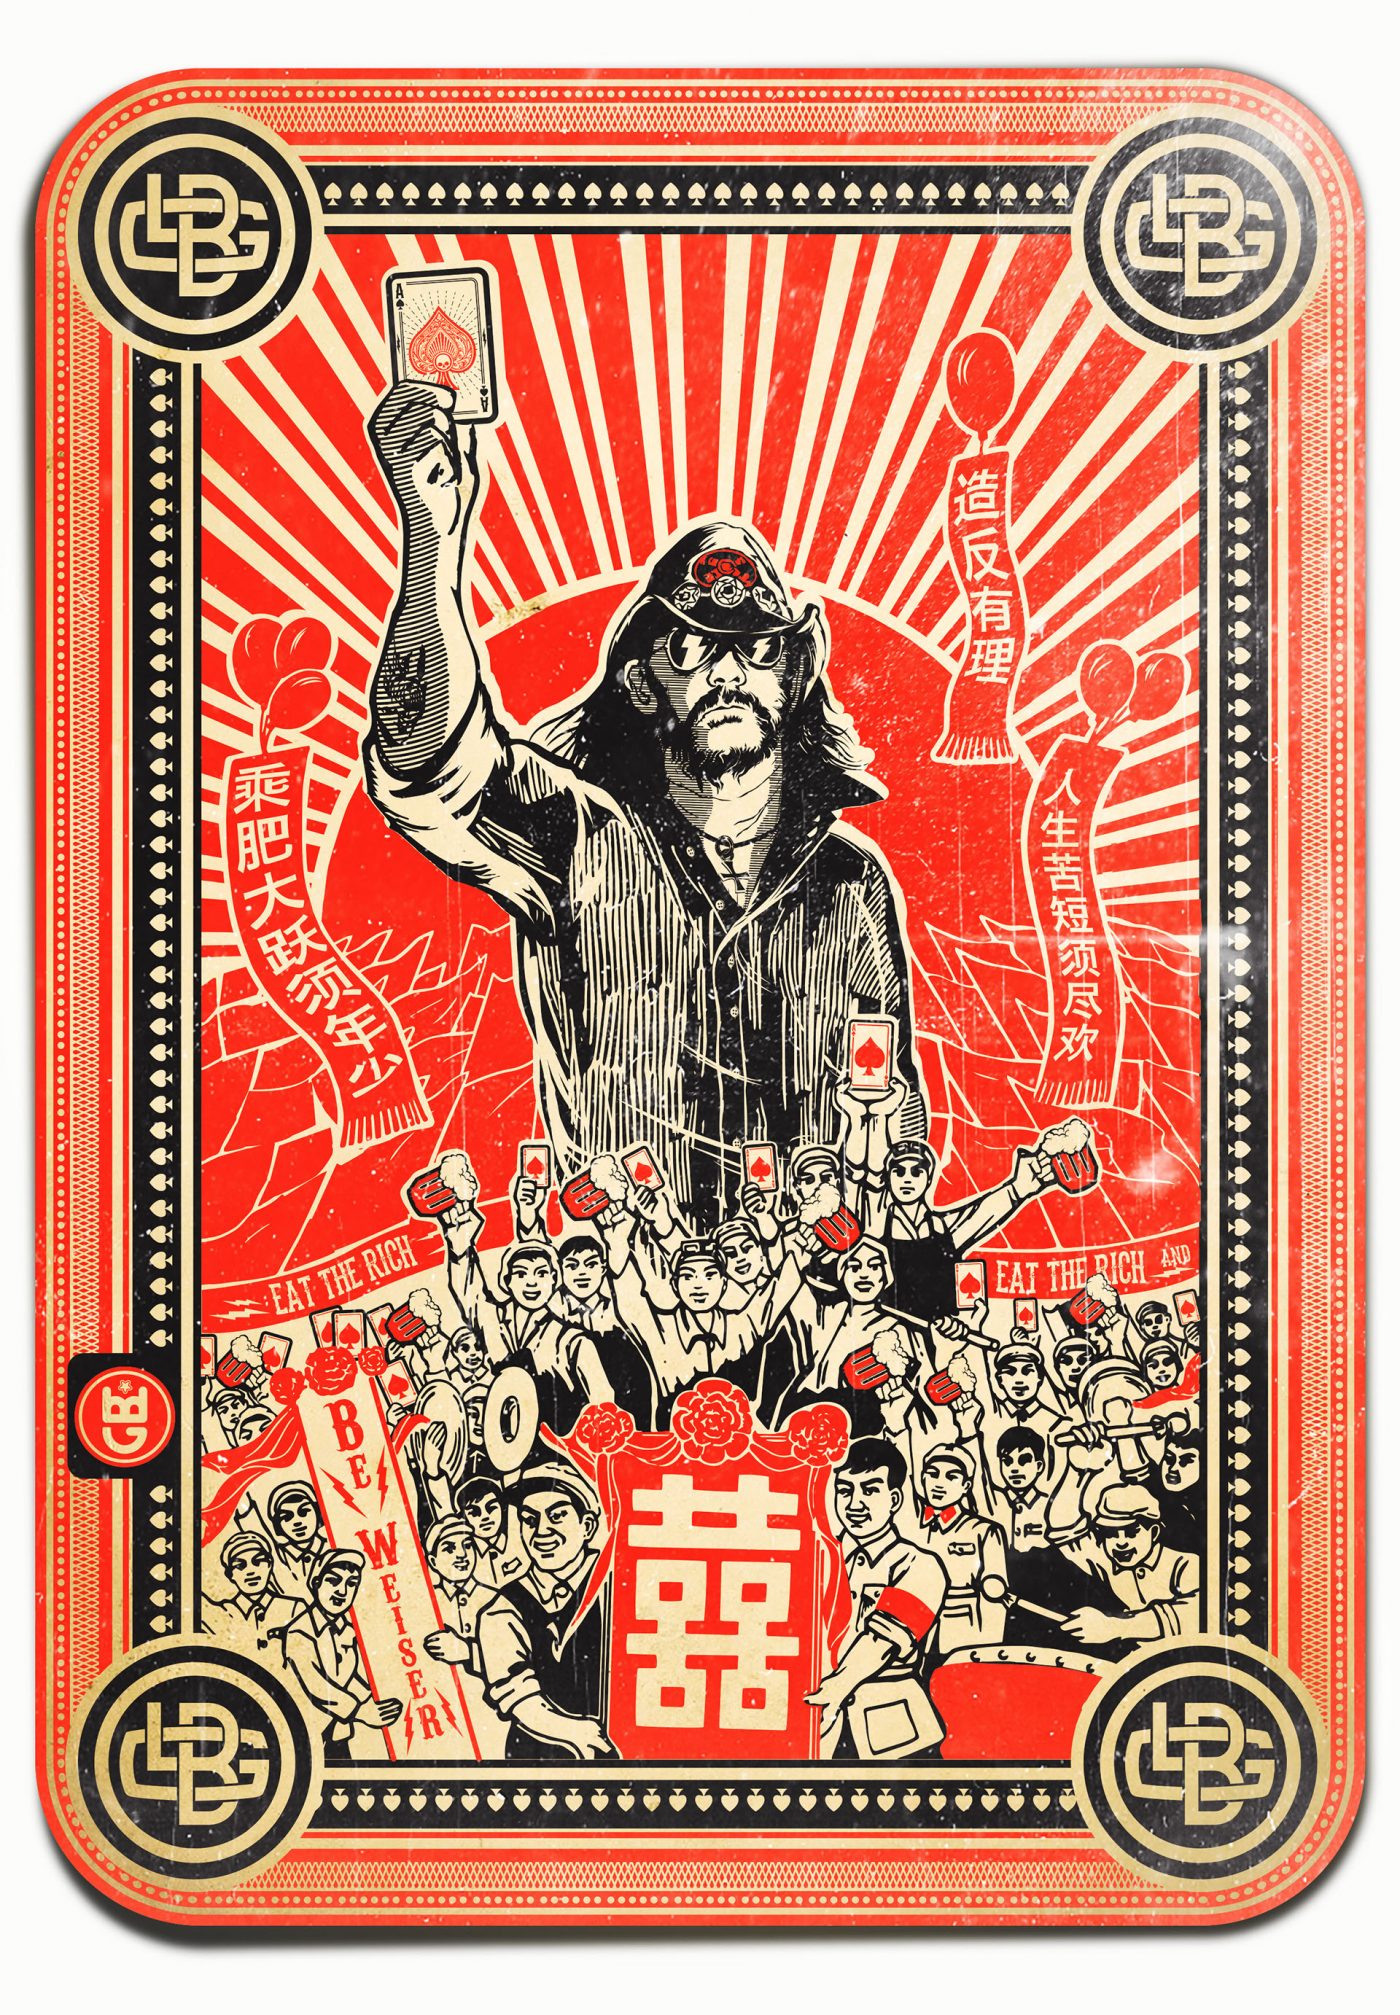 The Lemmy's Revolution